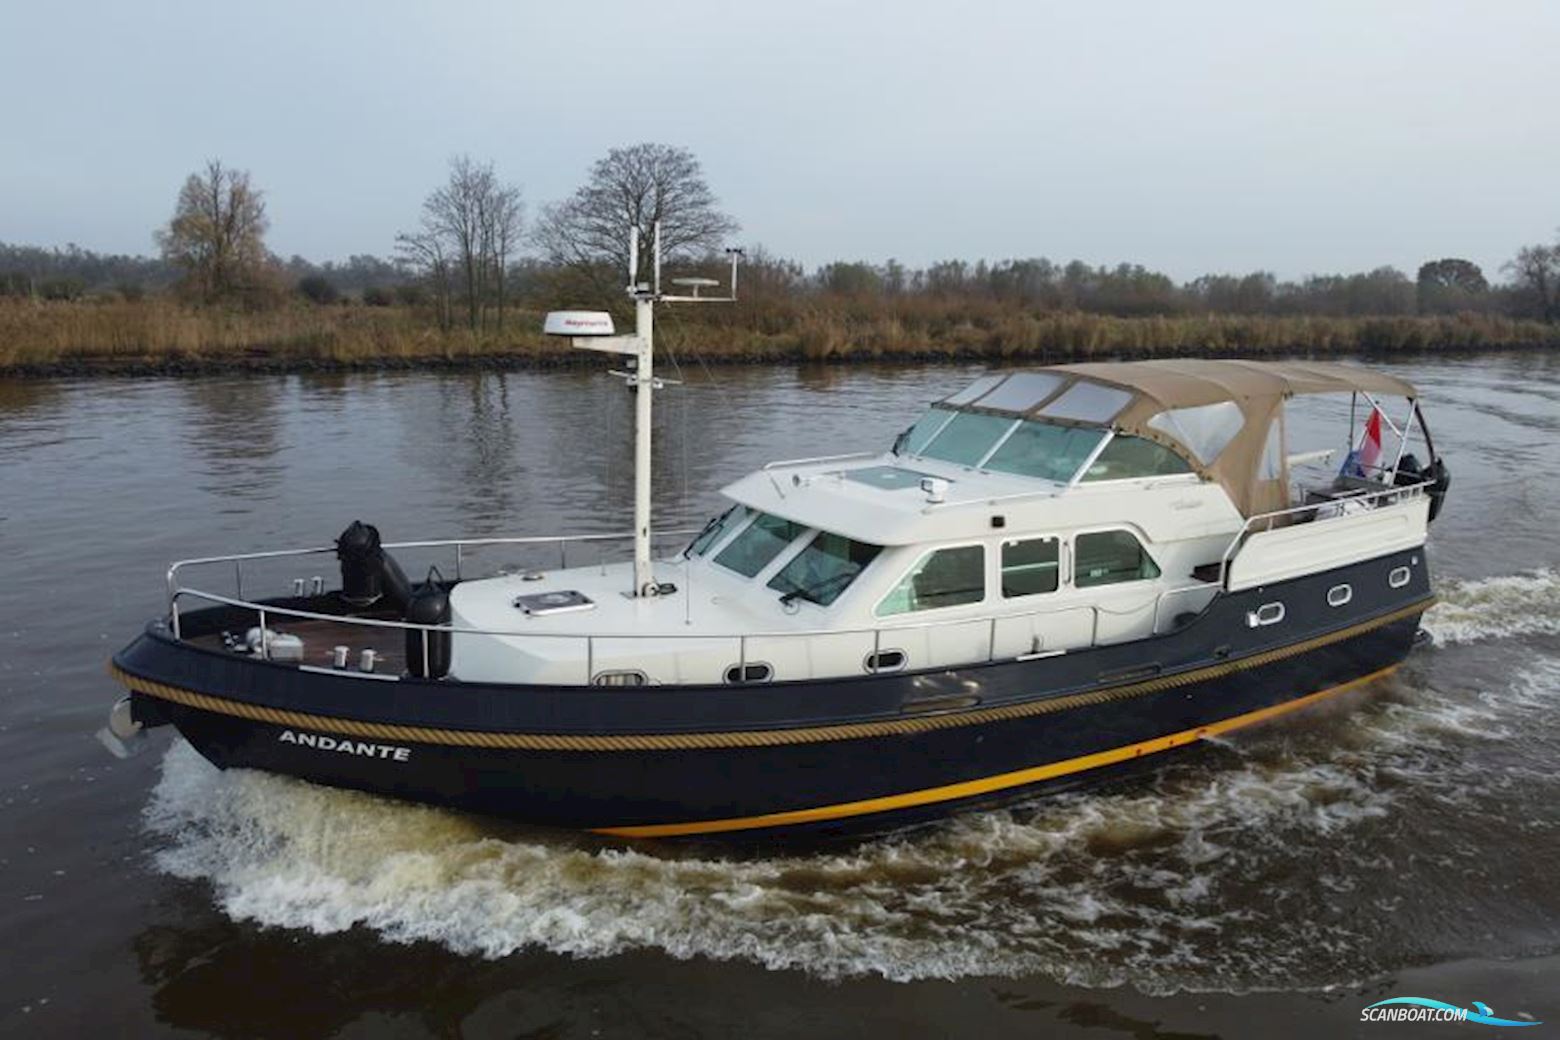 Linssen Grand Sturdy 430 AC Twin Motorboot 2003, mit Volvo Penta 145 pk. motor, Niederlande